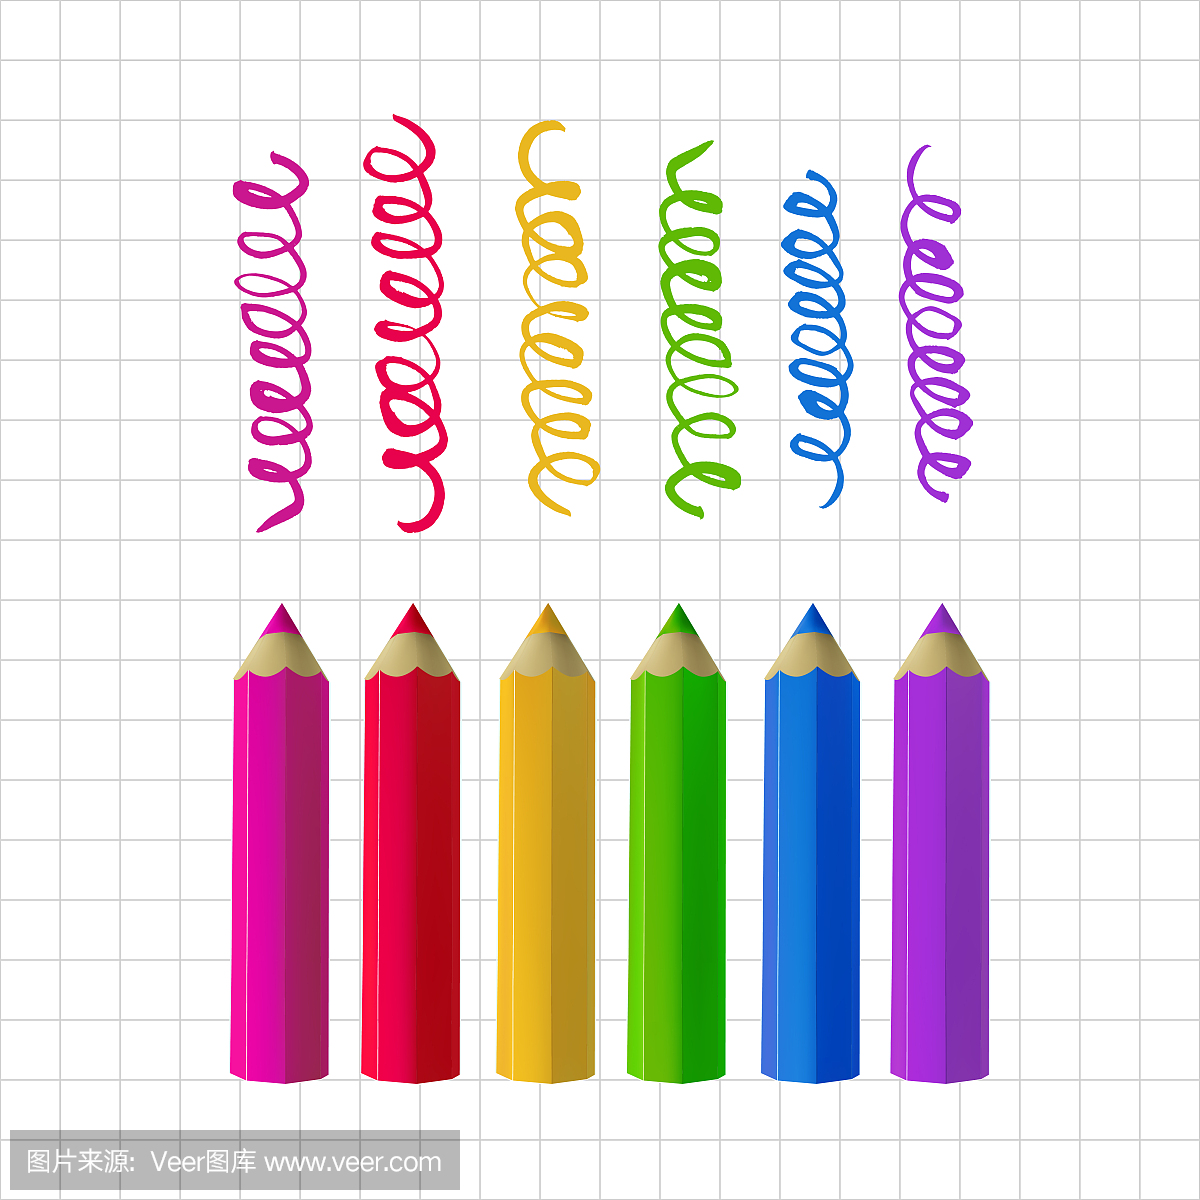 Colour pencils on copy-book paper